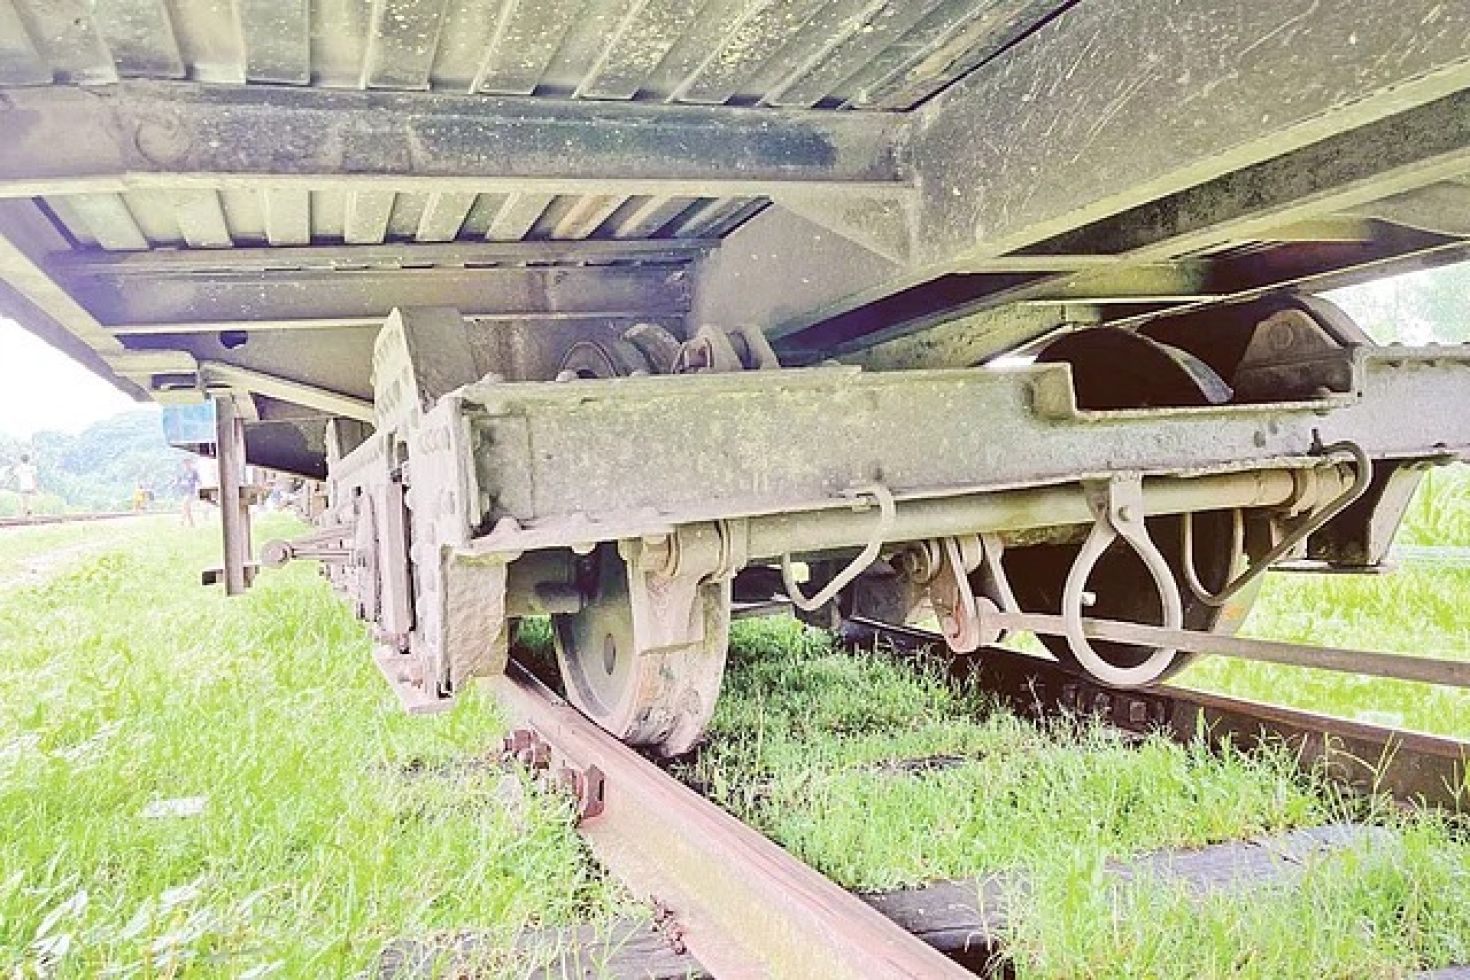 সান্তাহার-লালমনিরহাট রেলপথ
ঘন ঘন লাইনচ্যুতি, যাত্রী ভোগান্তি চরমে